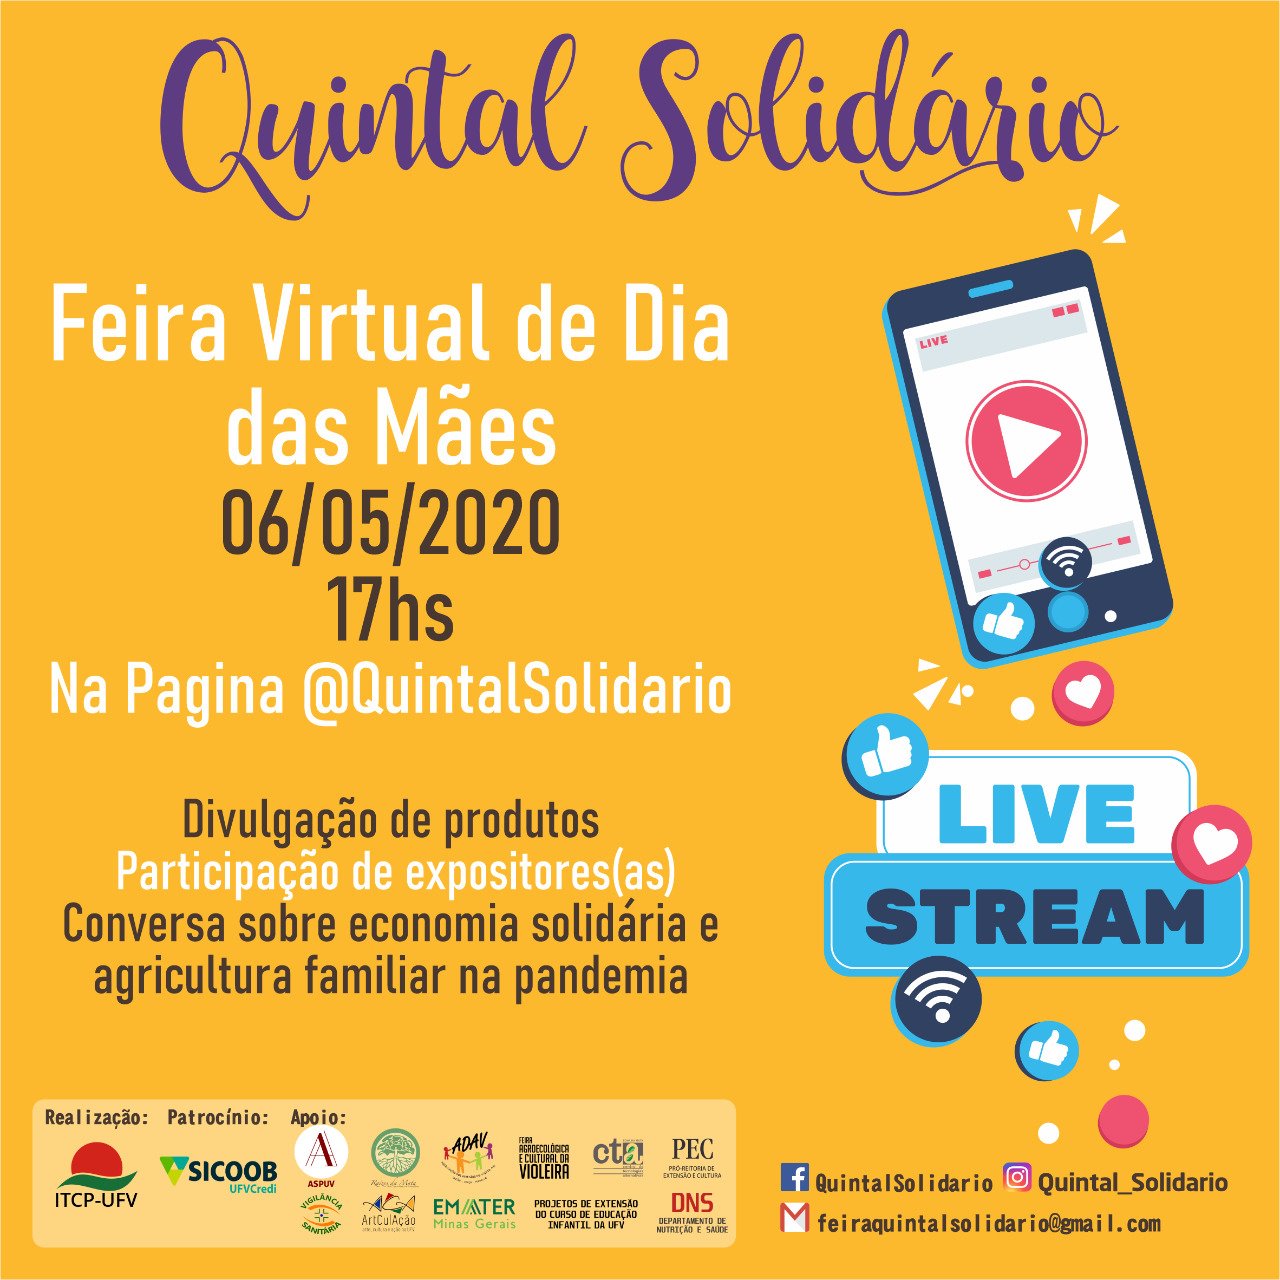 Quintal Solidário realiza feira virtual nesta quarta-feira